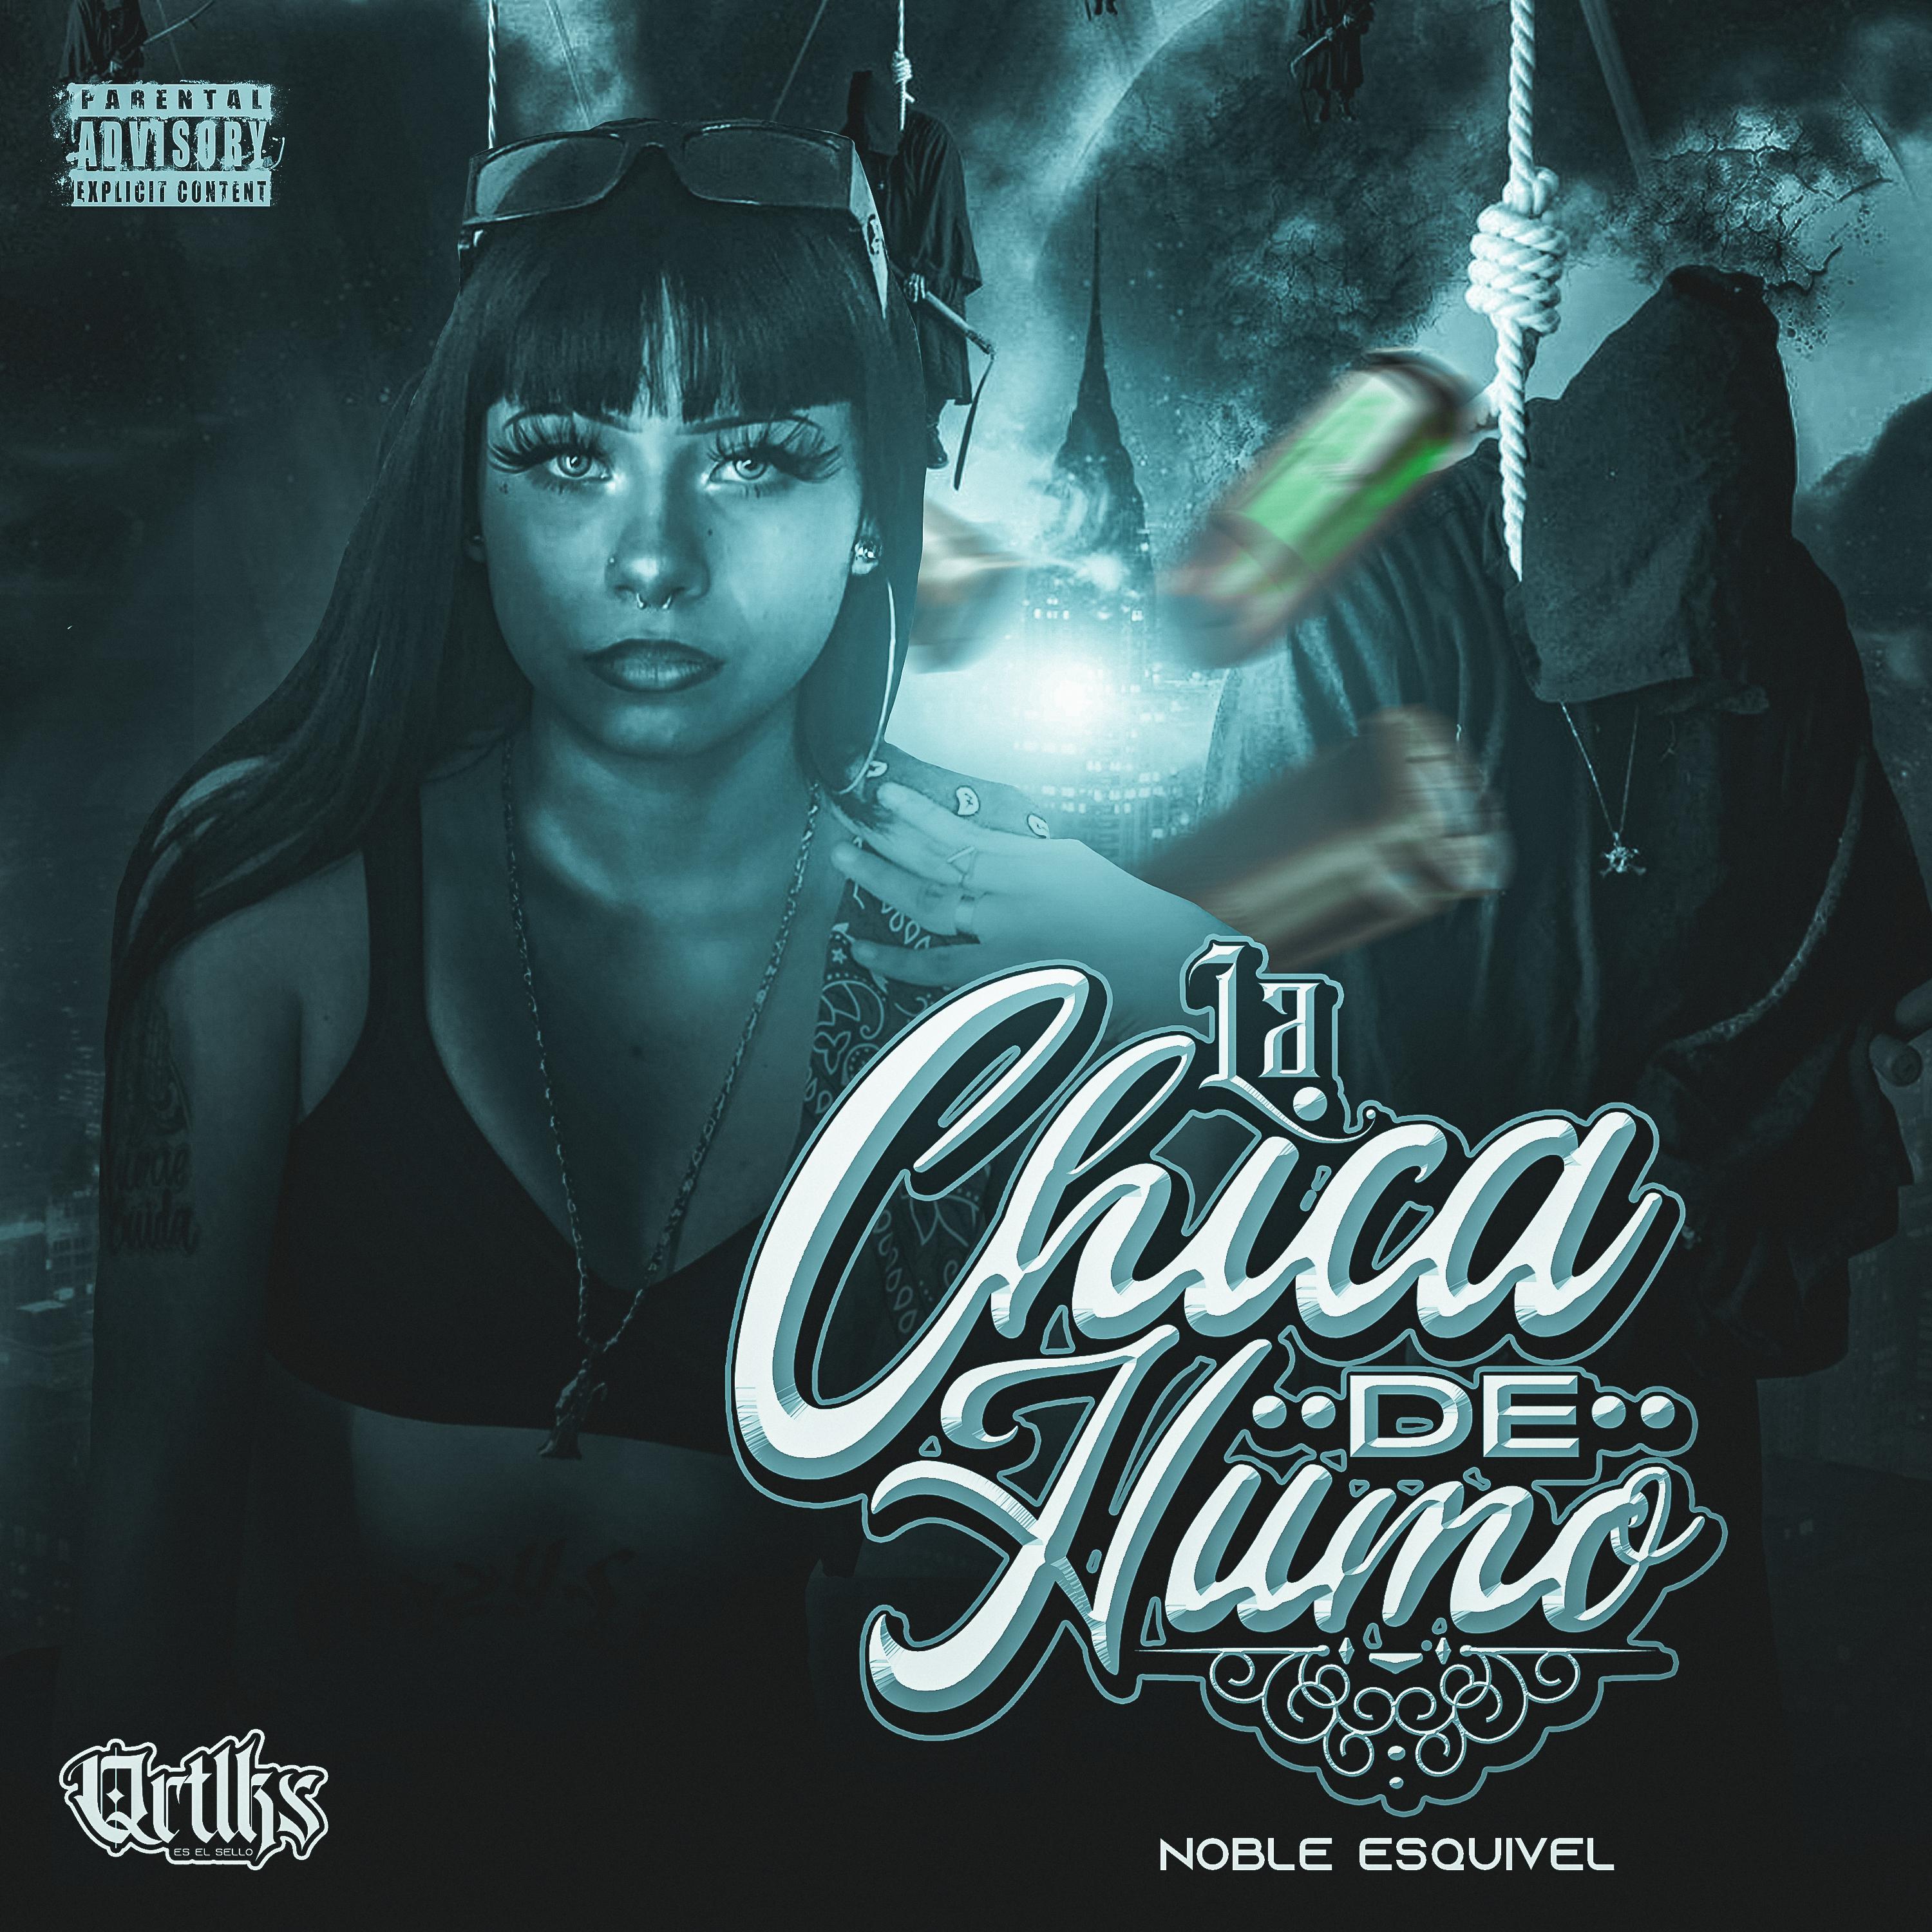 Постер альбома La Chica de Humo